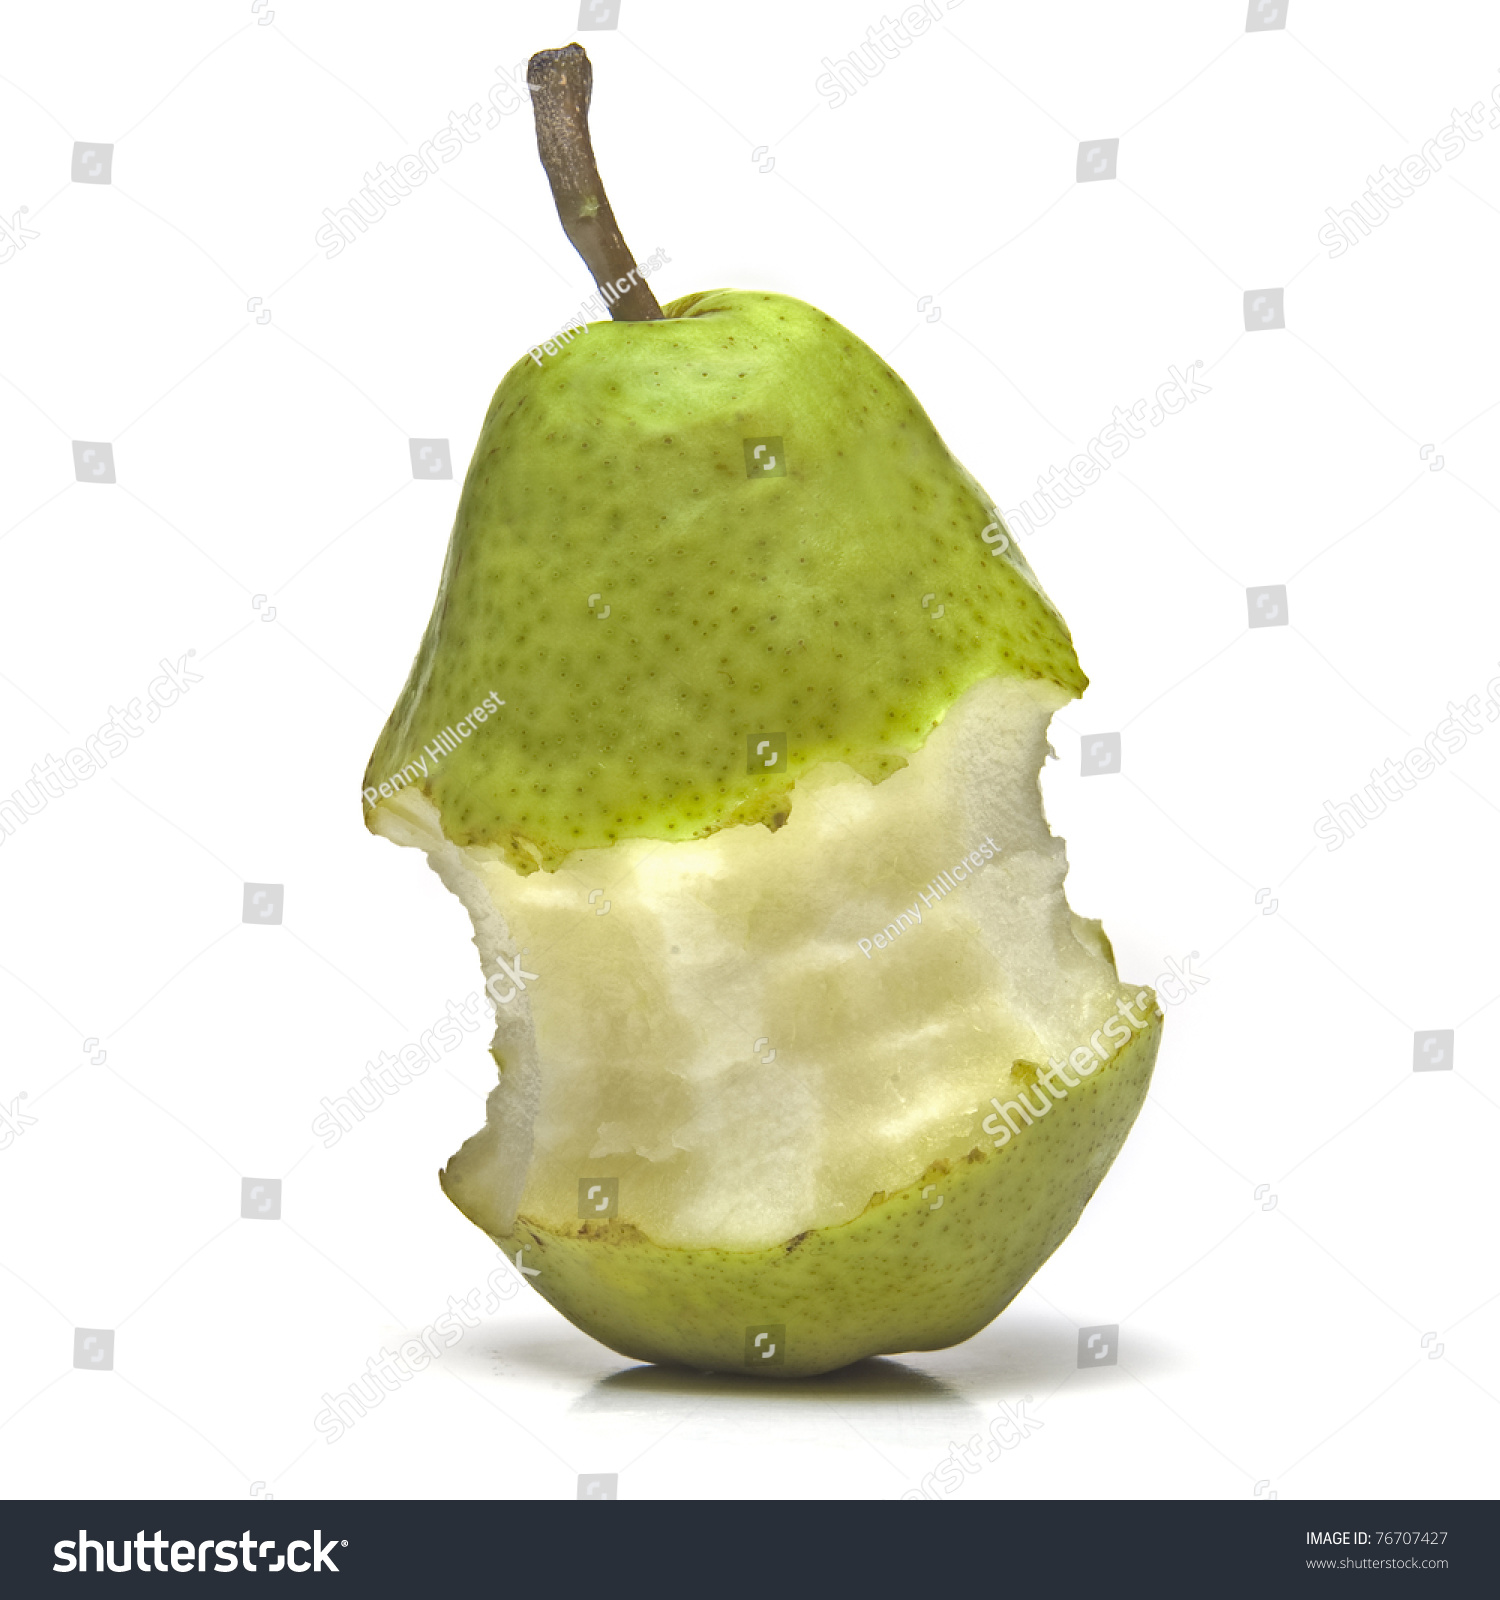 Halfeaten Pear On White Background Stock Photo (Royalty Free ...